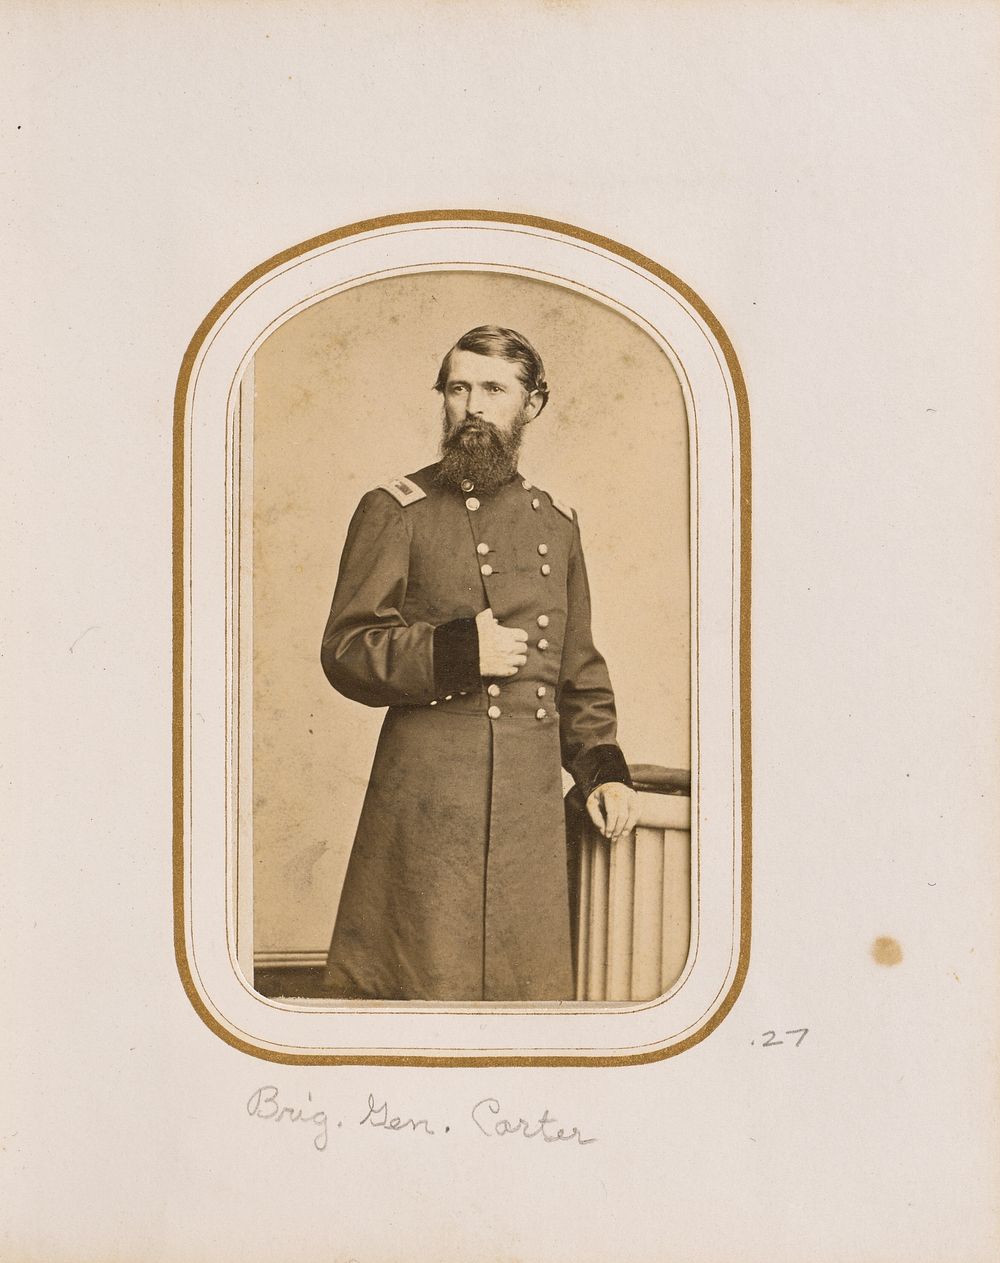 Brig. Gen. Carter by Charles DeForest Fredricks